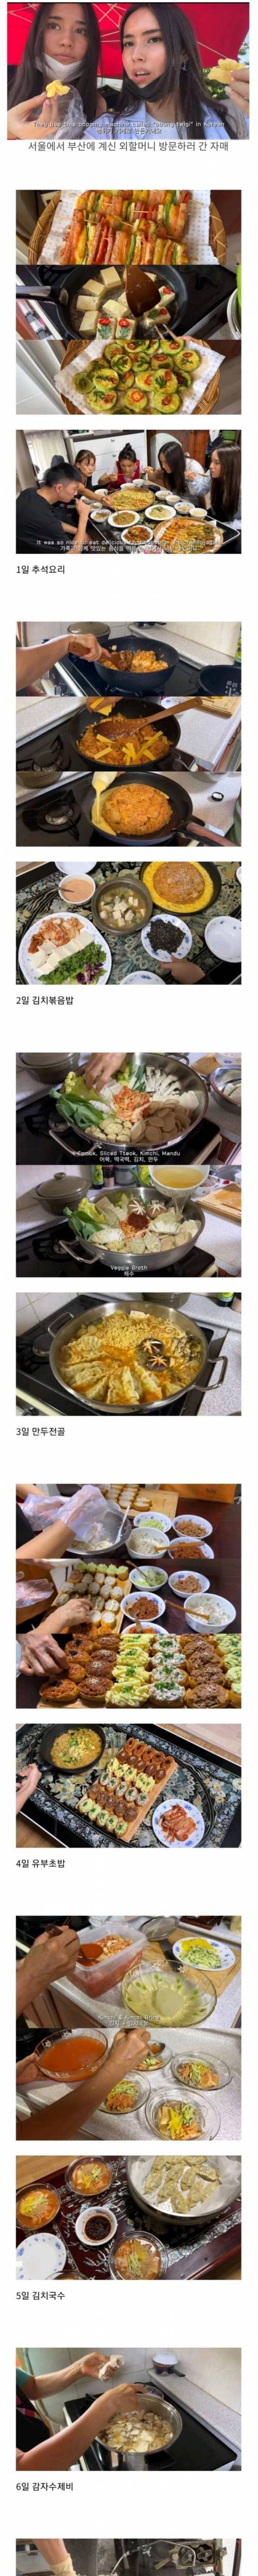 한국 혼혈 누나들이 부산 외할머니 집에서 먹은 음식들